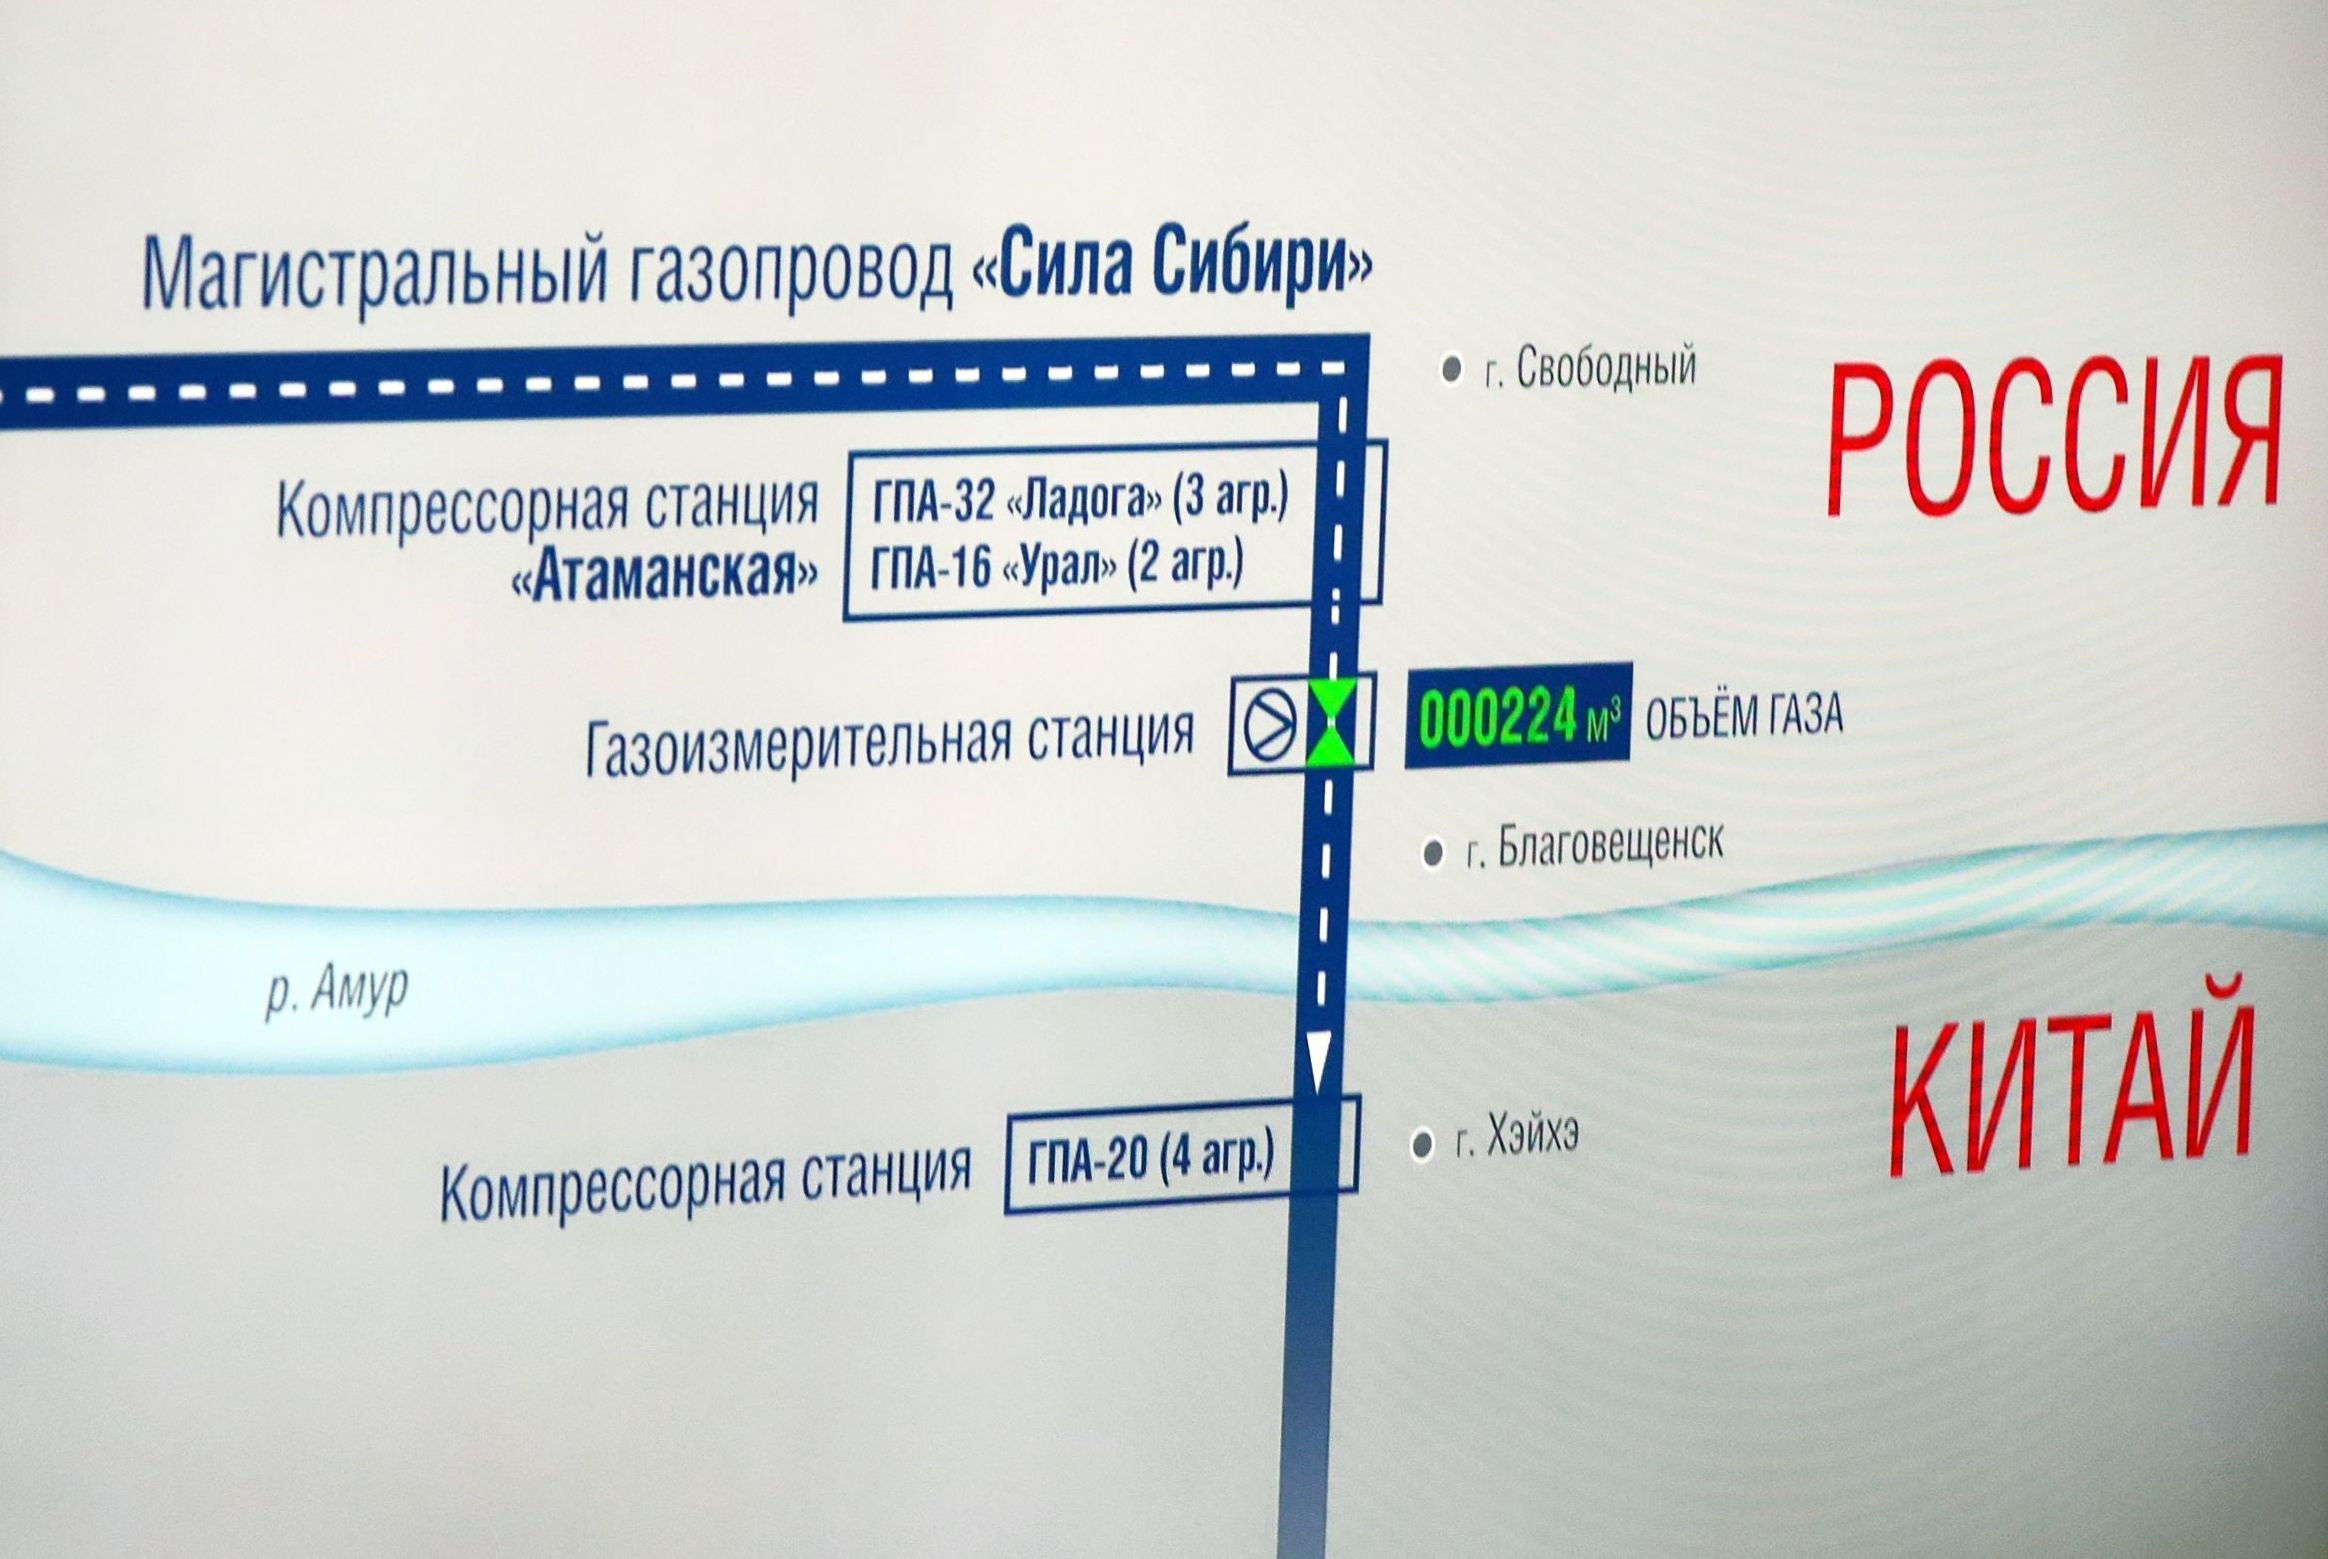 Монитор с изображением трансляции церемонии начала поставок российского газа в КНР по "восточному" маршруту, 2 декабря 2019 года